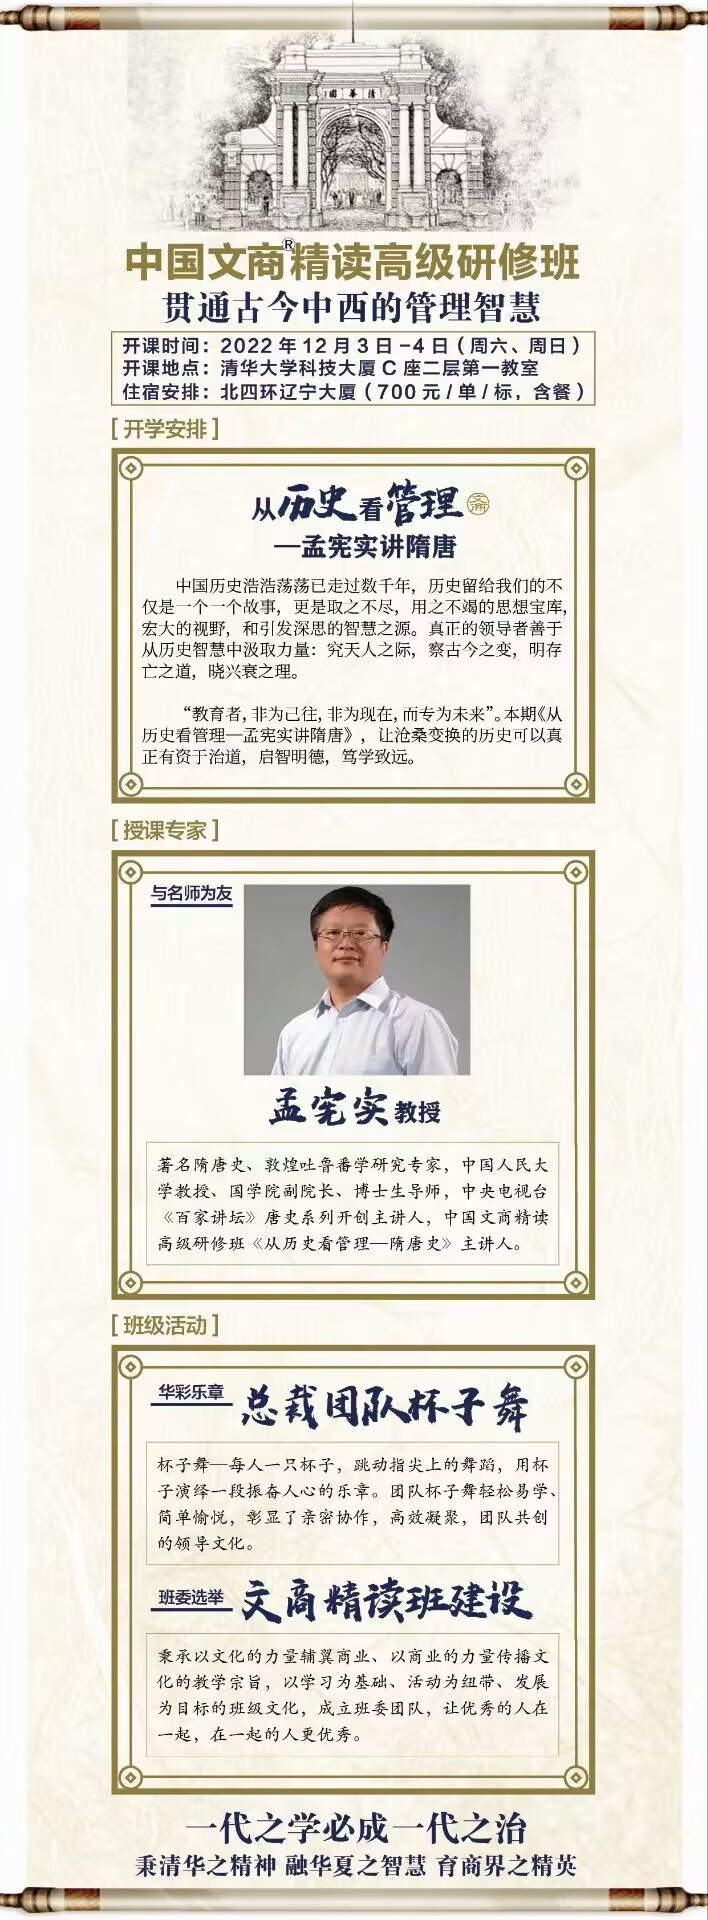 2022年12月3-4日中国文商精读高级研修班开课通知